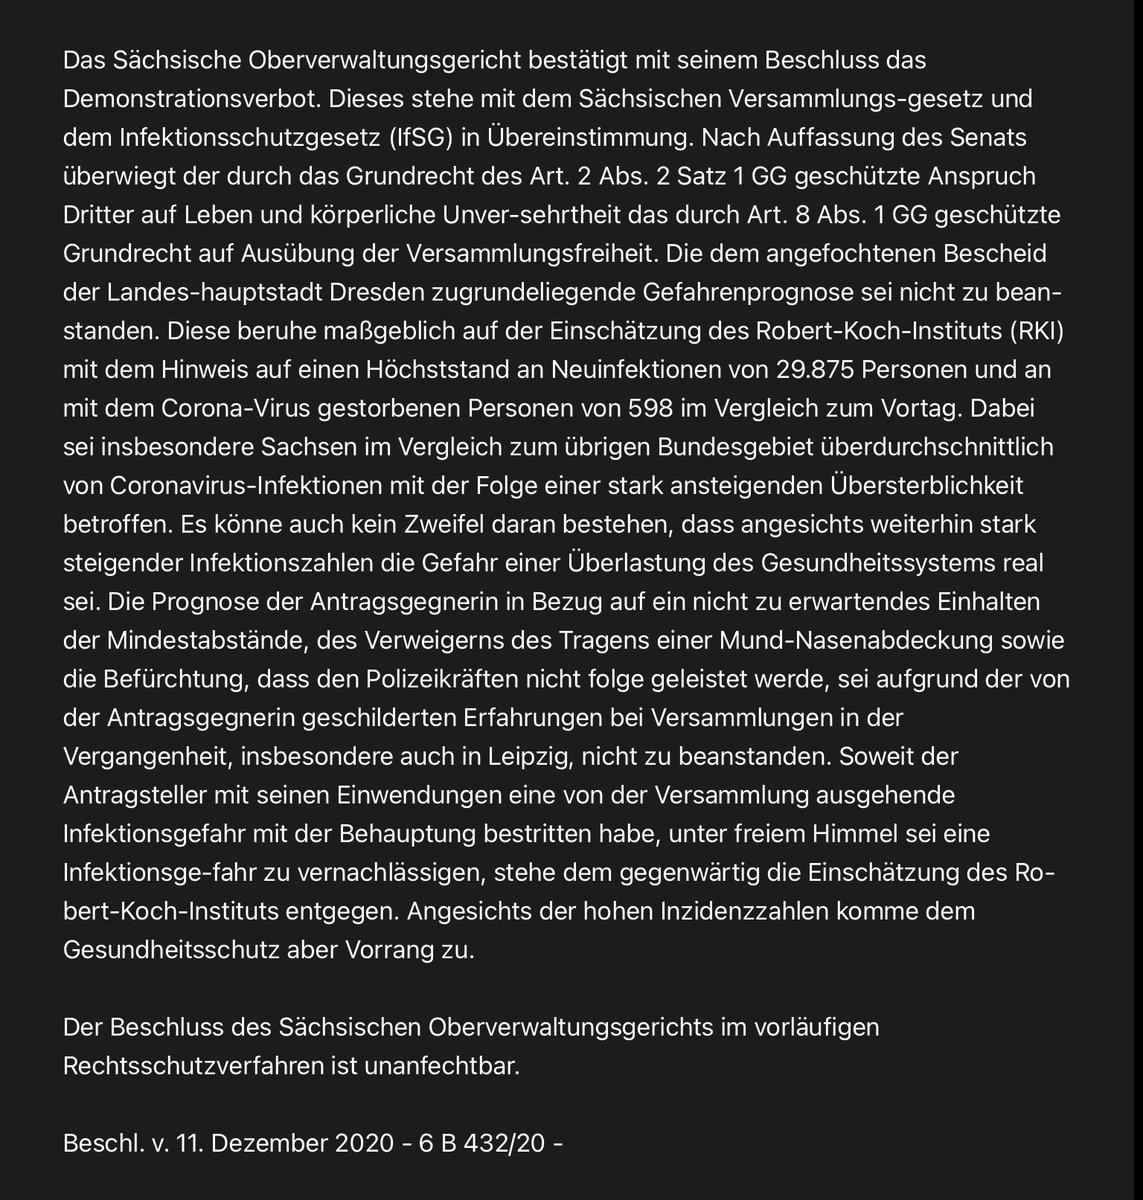 Das Sächsische #OVG #Bautzen - noch in bester Erinnerung wegen #LE0711 - bestätigt um 01:45 Uhr das #Demonstrationsverbot für #Querdenken #DD1212: Die der Stadt #Dresden zugrundeliegende #Gefahrenprognose sei „nicht zu beanstanden“. Die Presseerklärung im vollständigen Wortlaut: